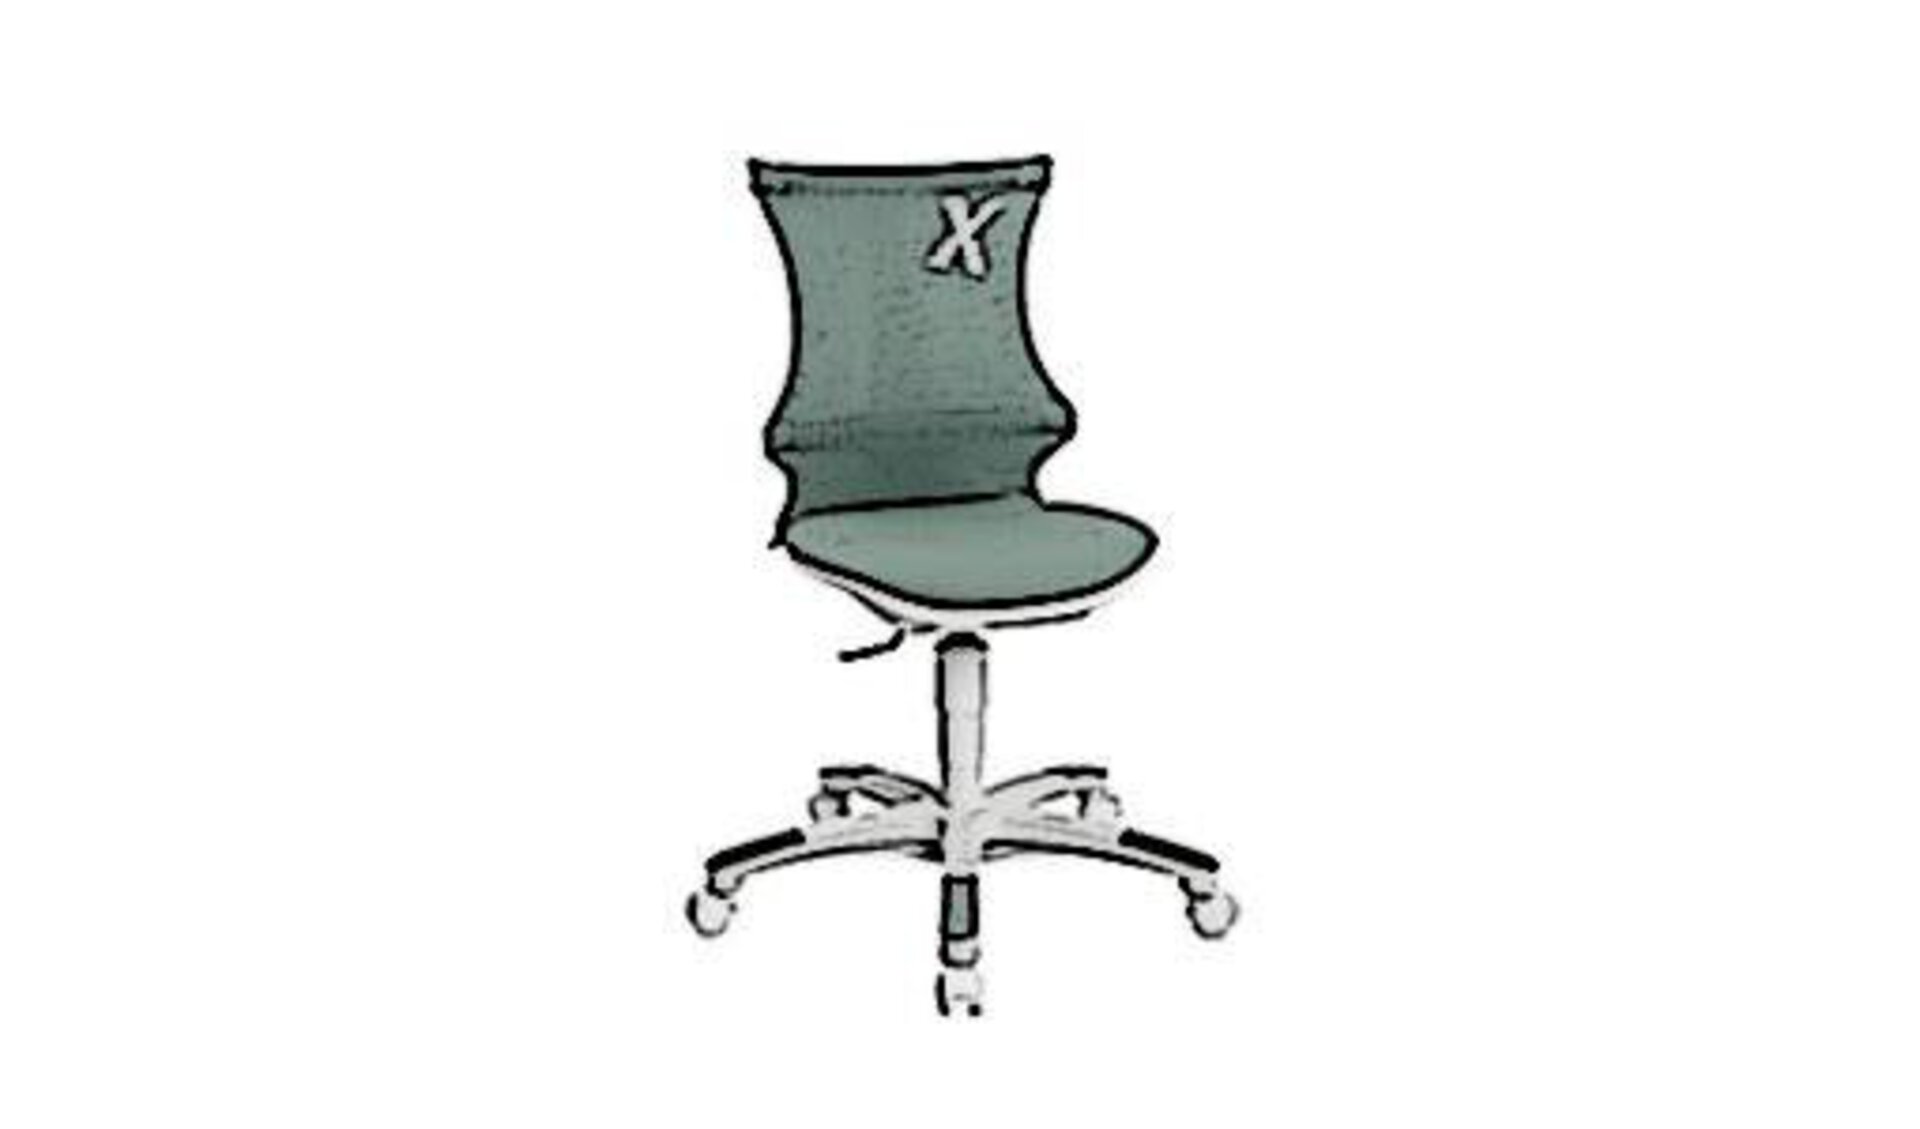 Icon für Kinderdrehstuhl zeigt einen kindgerechten Schreibtischstuhl in graugrüner Farbe.